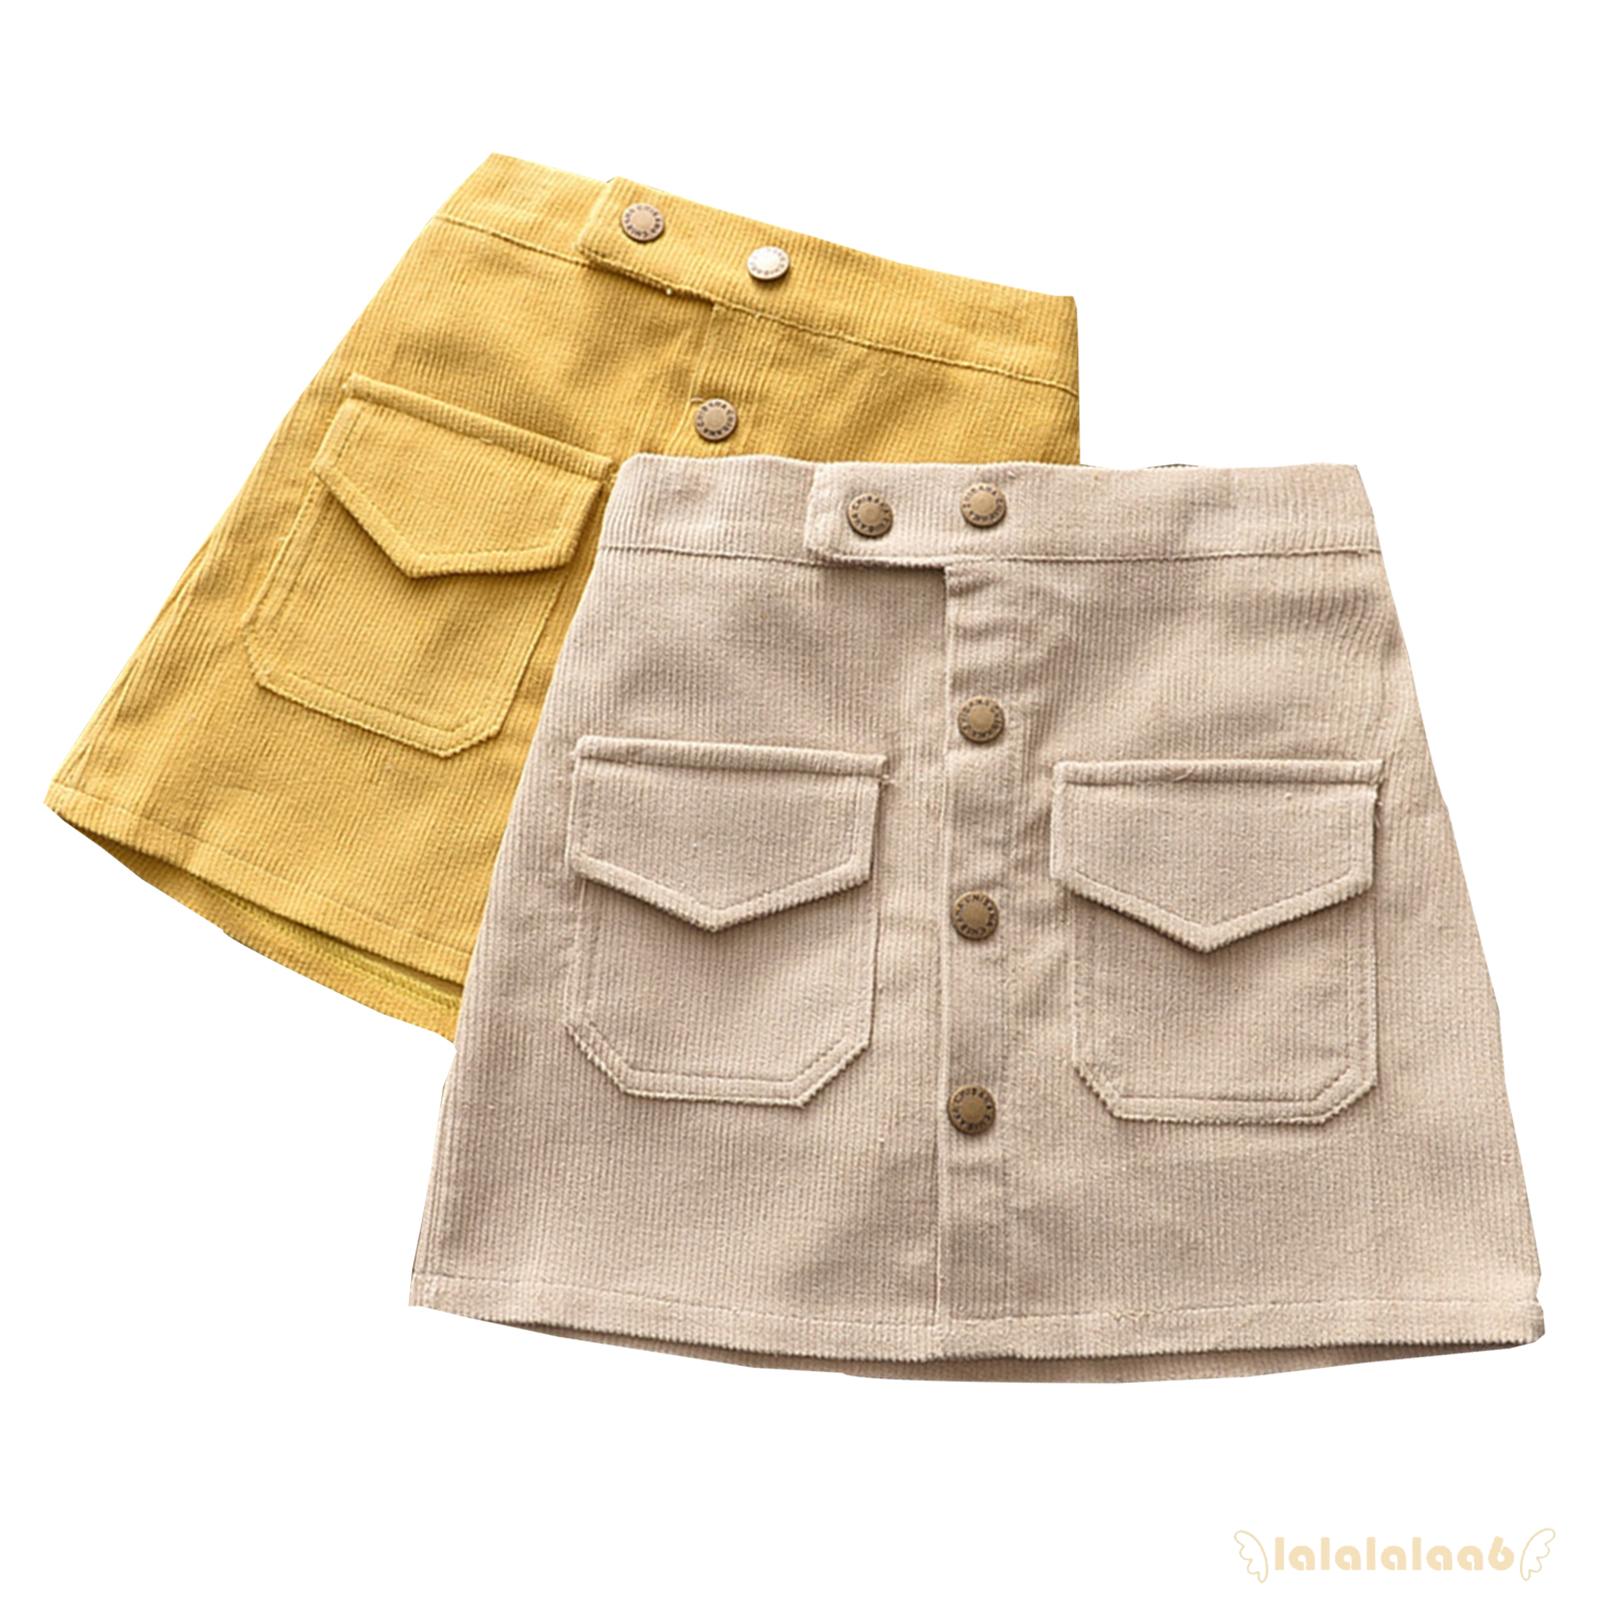 ◕ω◕Girls Corduroy Versatile Buttock Wrapping Half Length Skirt